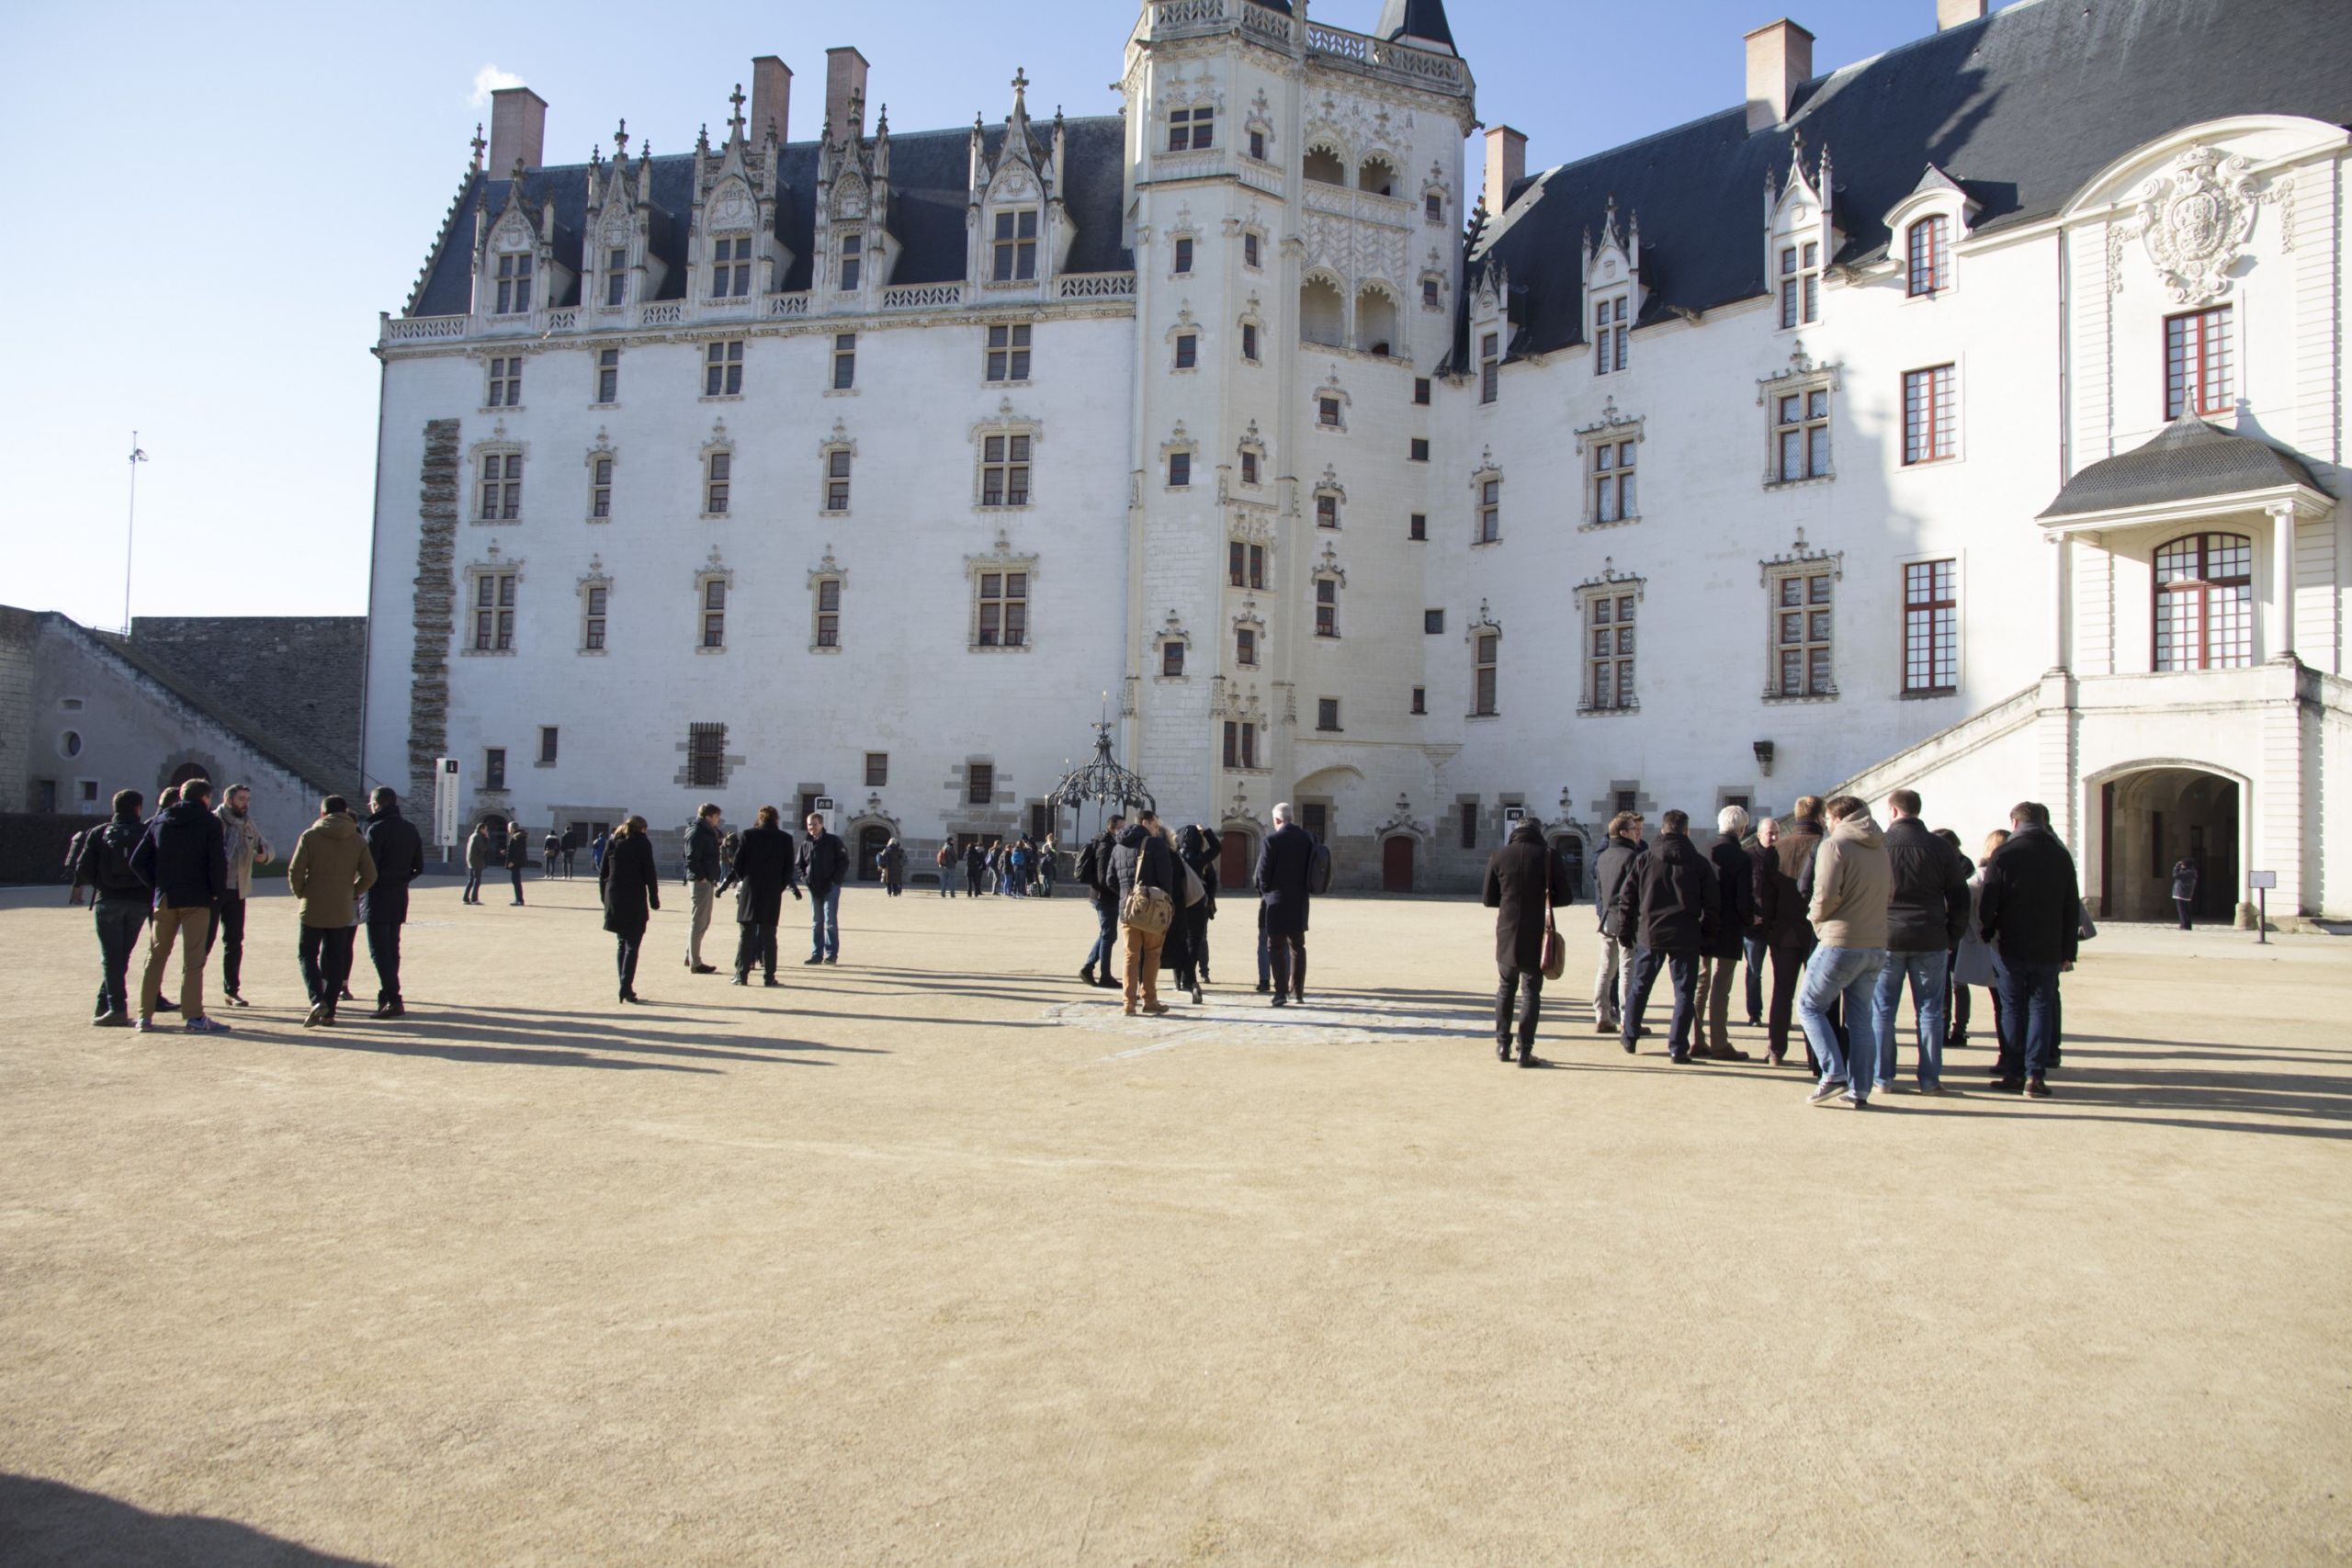 Nantes' Castle